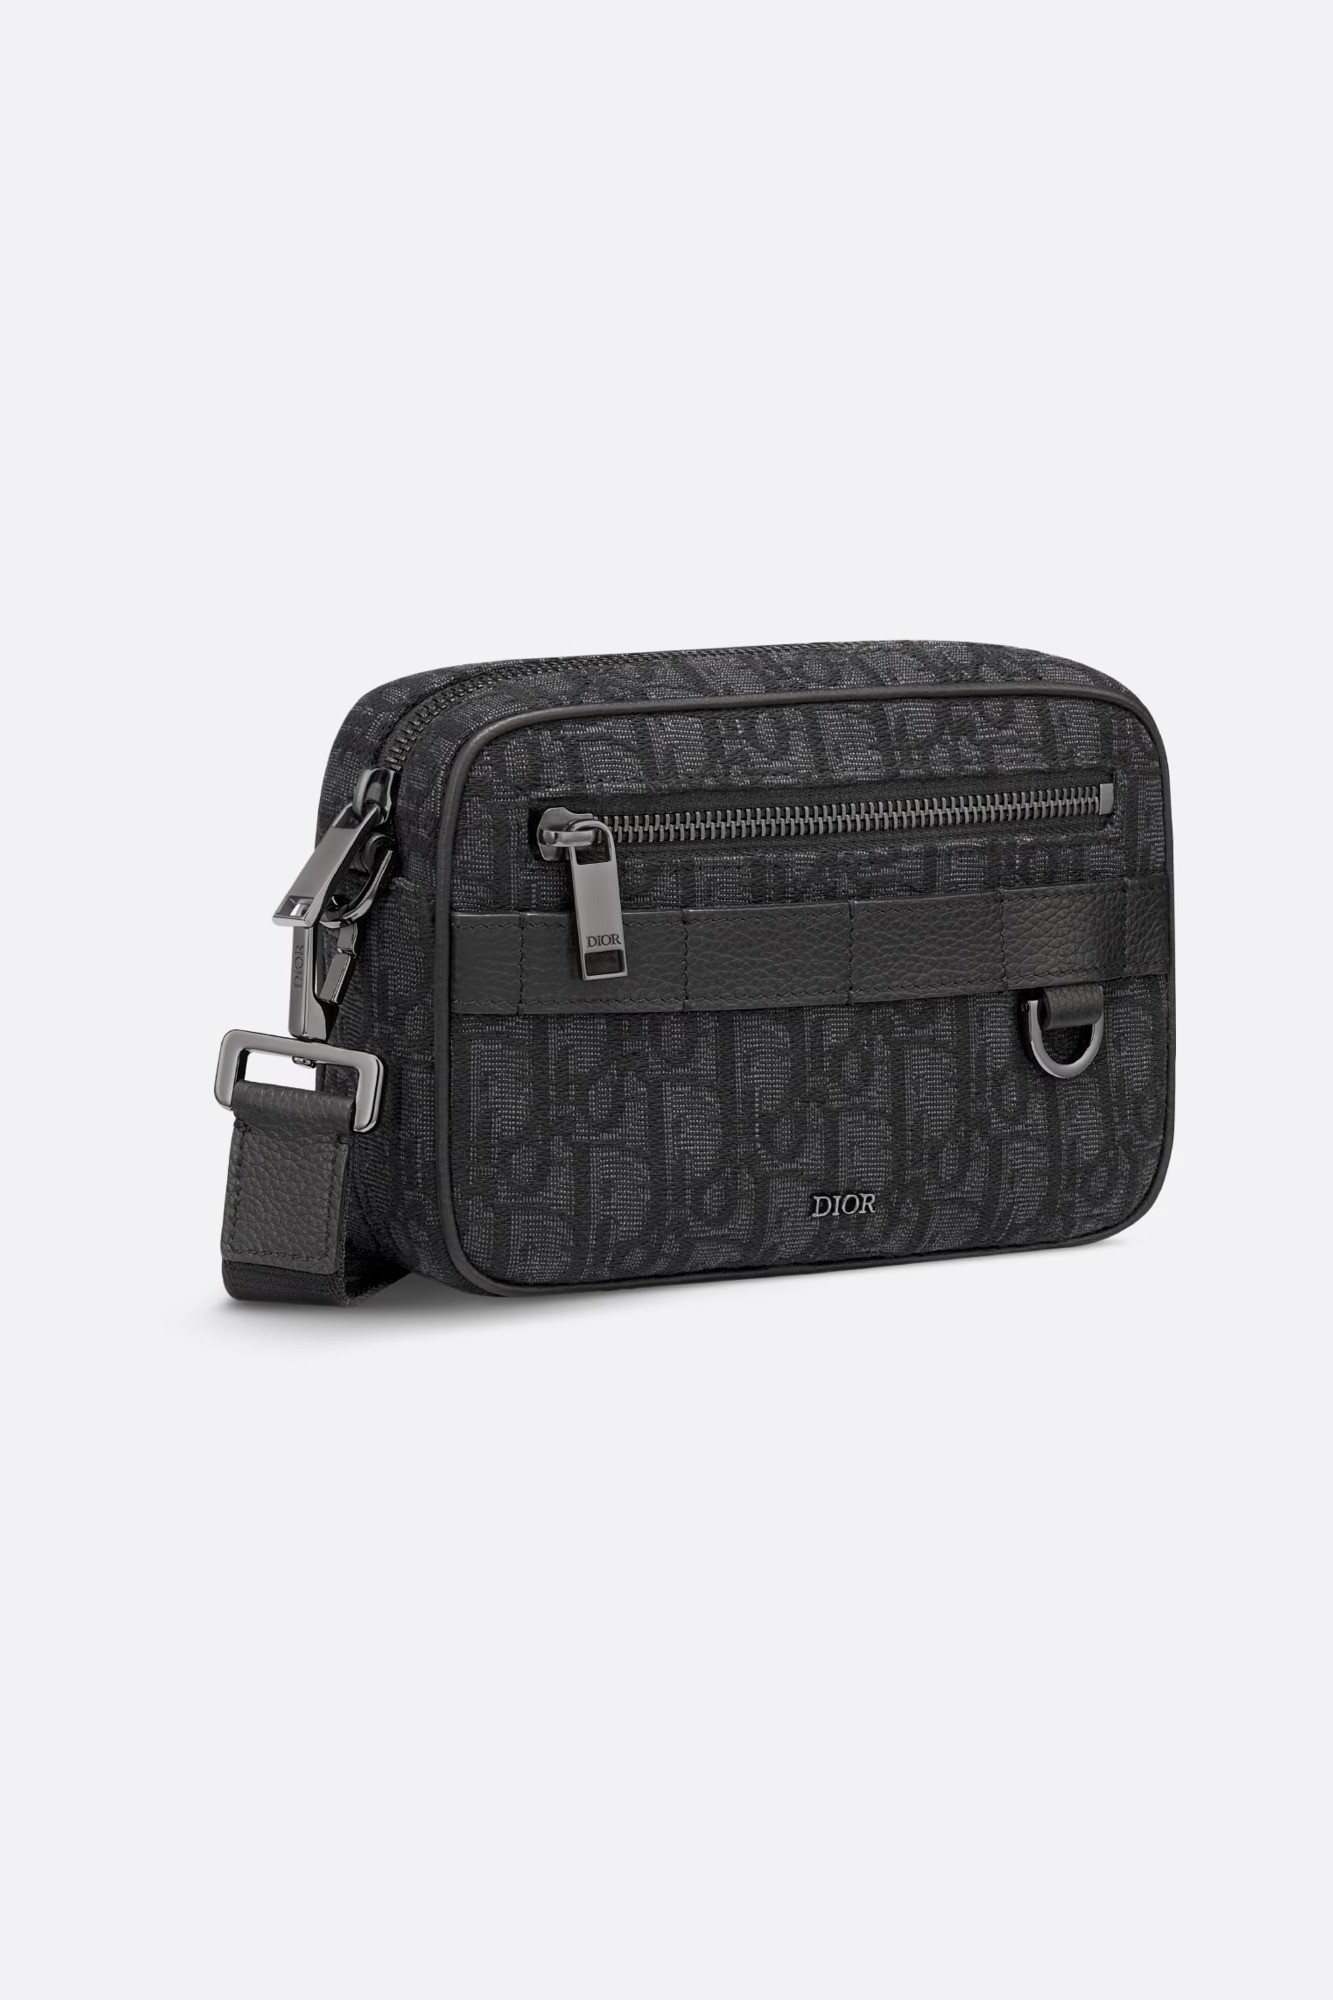 Dior - Mini Safari Bag with Strap - Black